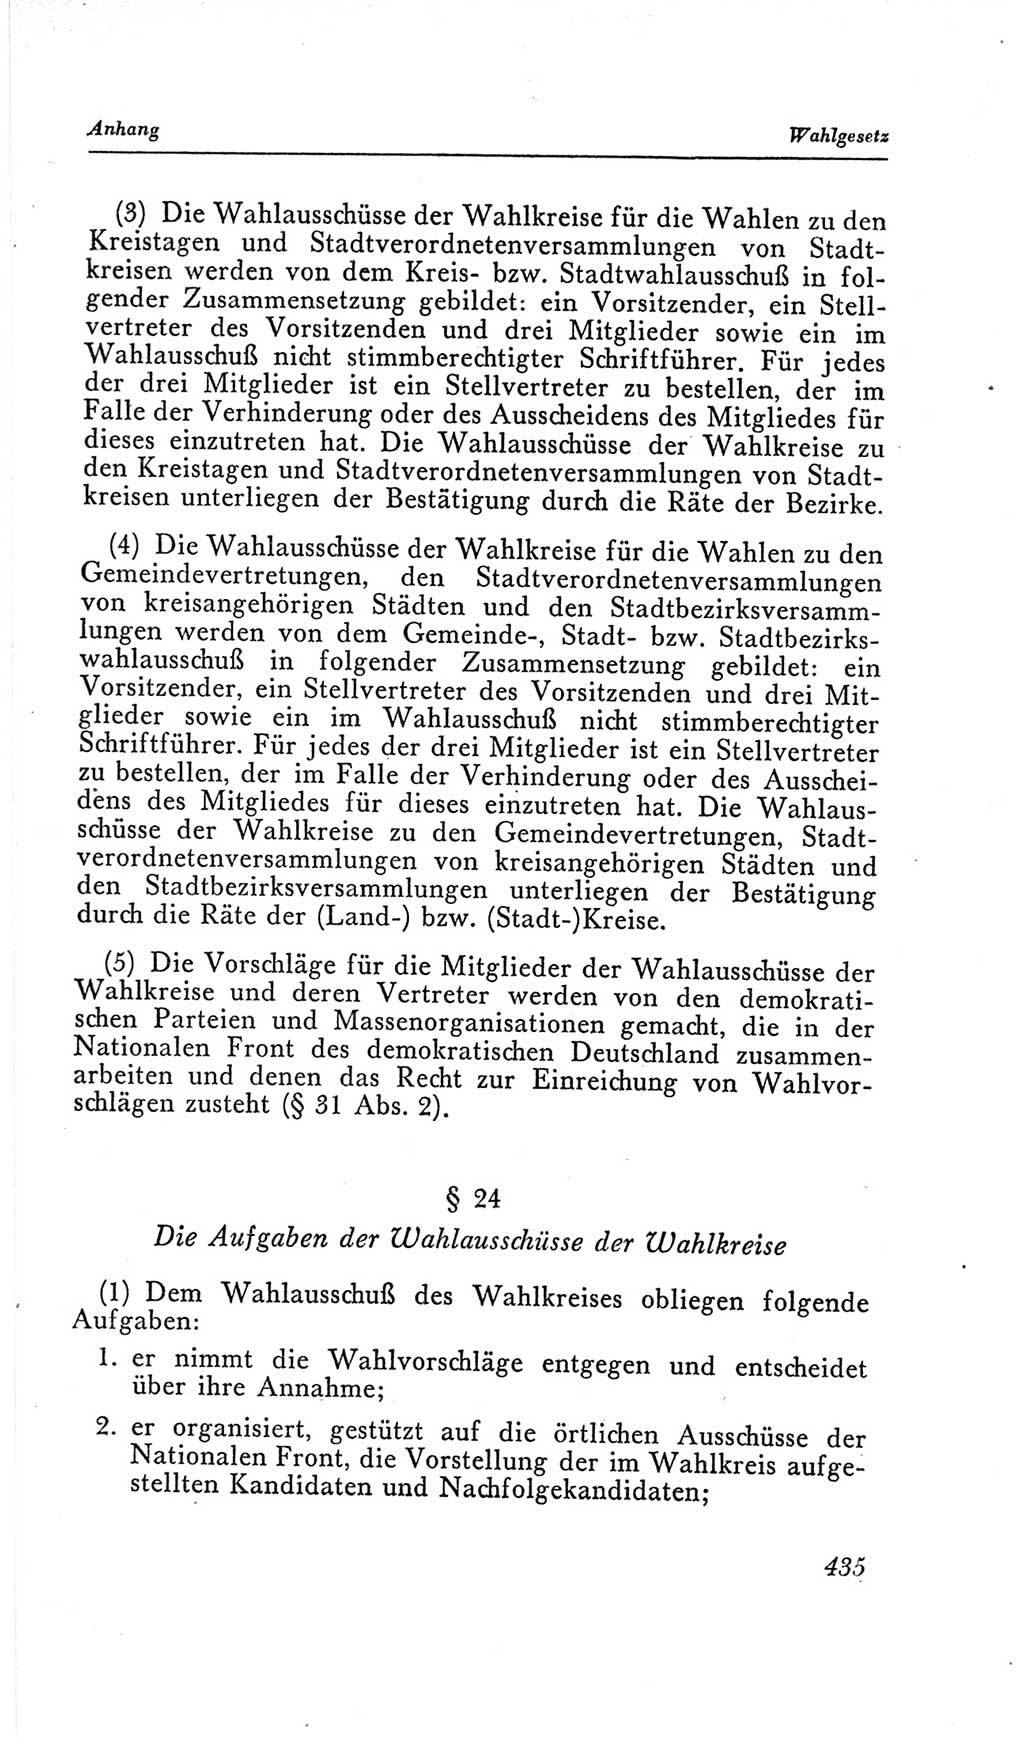 Handbuch der Volkskammer (VK) der Deutschen Demokratischen Republik (DDR), 2. Wahlperiode 1954-1958, Seite 435 (Hdb. VK. DDR, 2. WP. 1954-1958, S. 435)